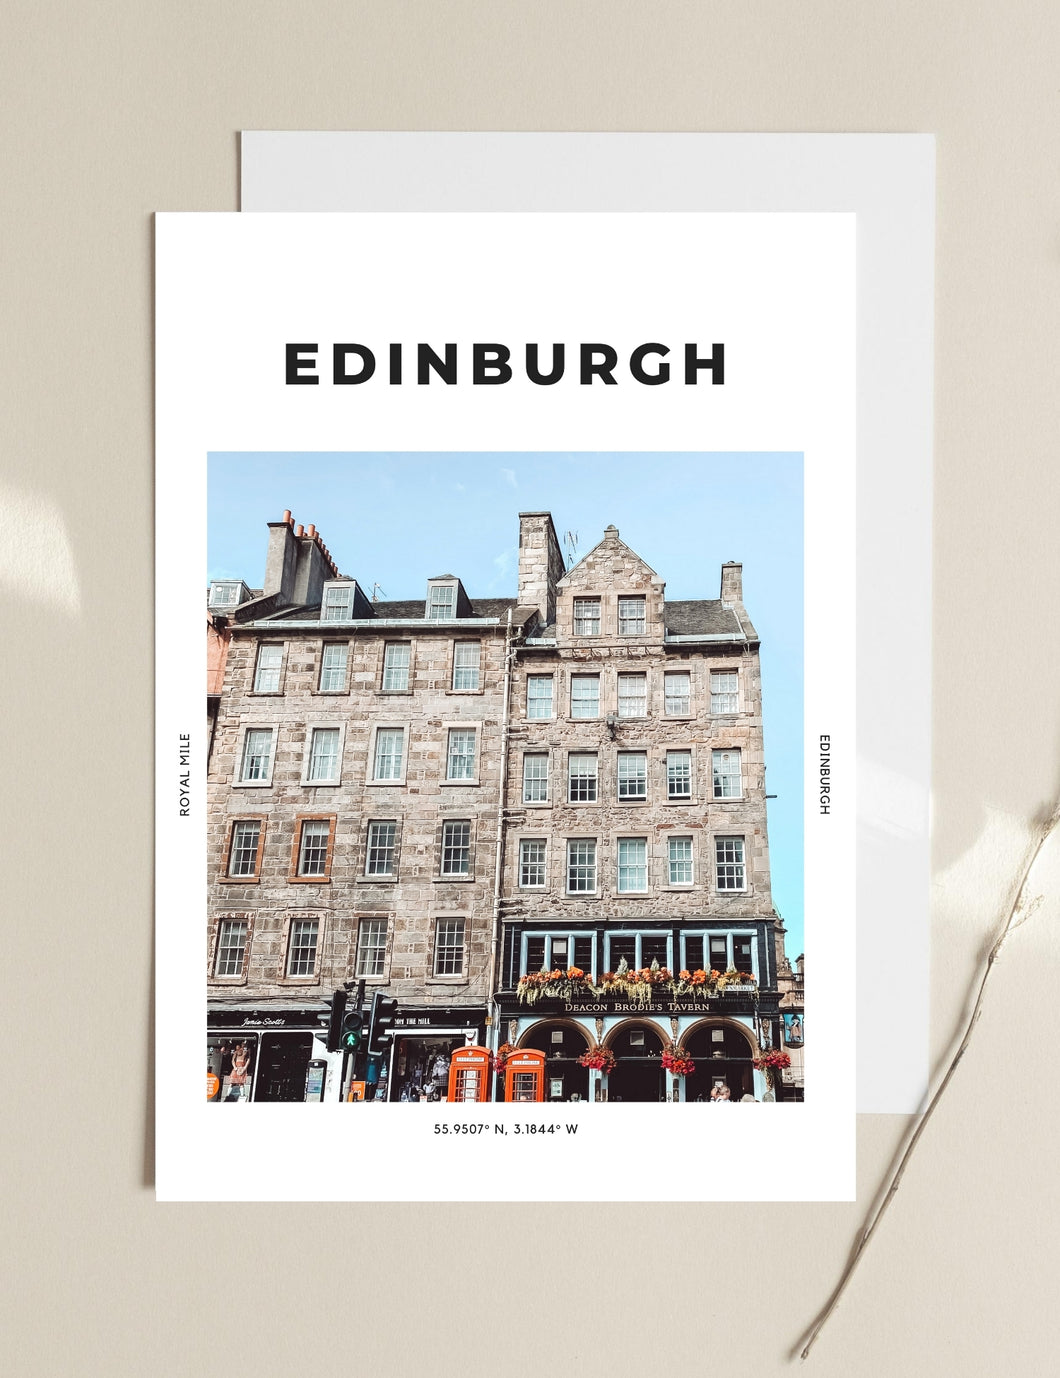 Edinburgh 'Royal Mile' Print